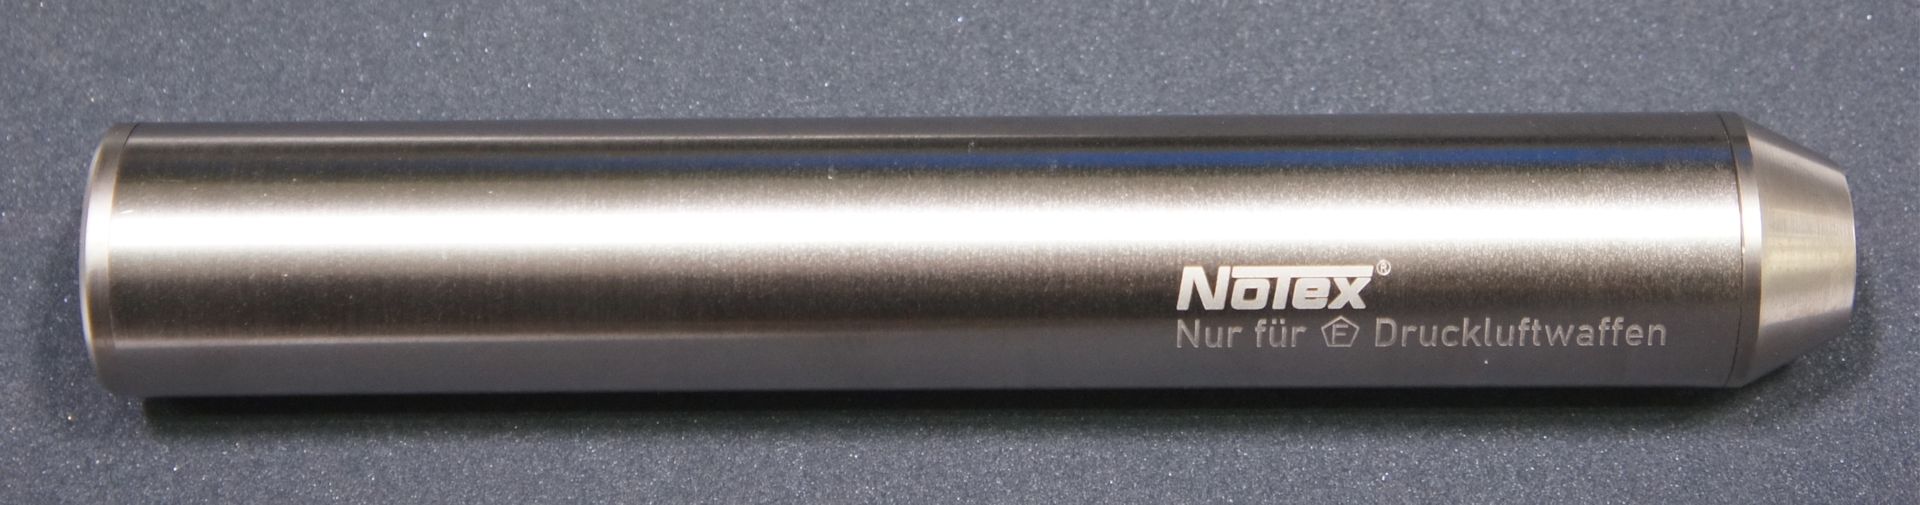 vernickelter Schalldmpfer der Marke Notex fr Druckluftwaffen im Kal. 4,5  und 5,5mm mit Laufgewinde Halbzoll UNF20